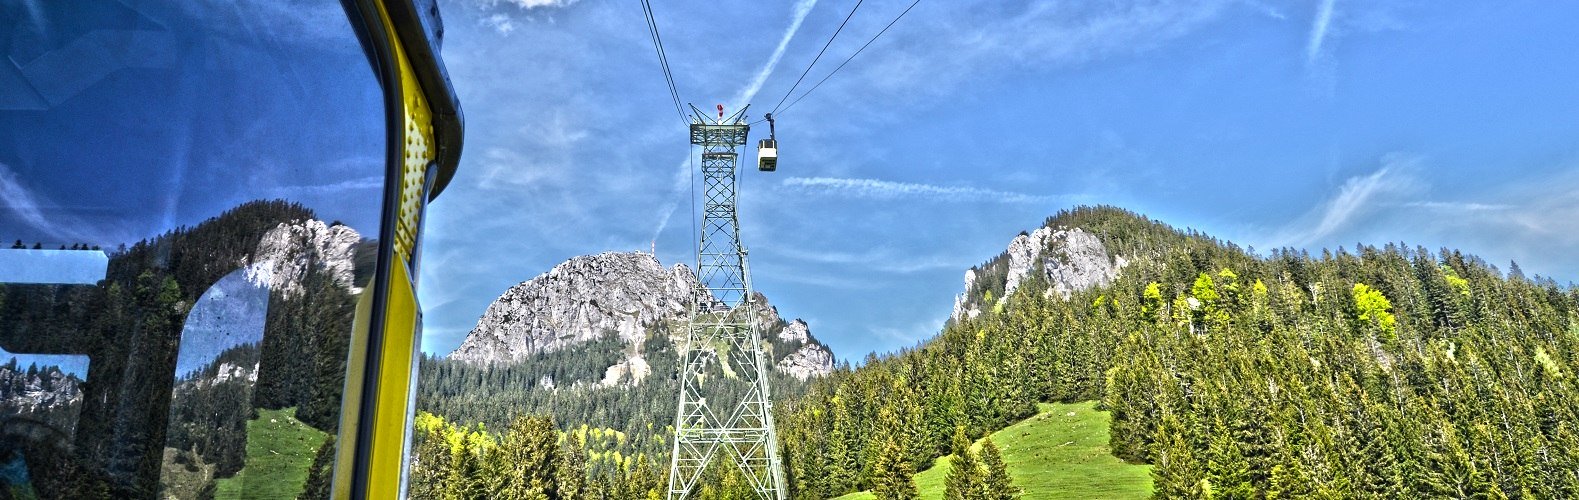 Wendelsteingipfel mit Großkabinen-Pendelbahn, © Alpenregion Tegernsee Schliersee e.V.